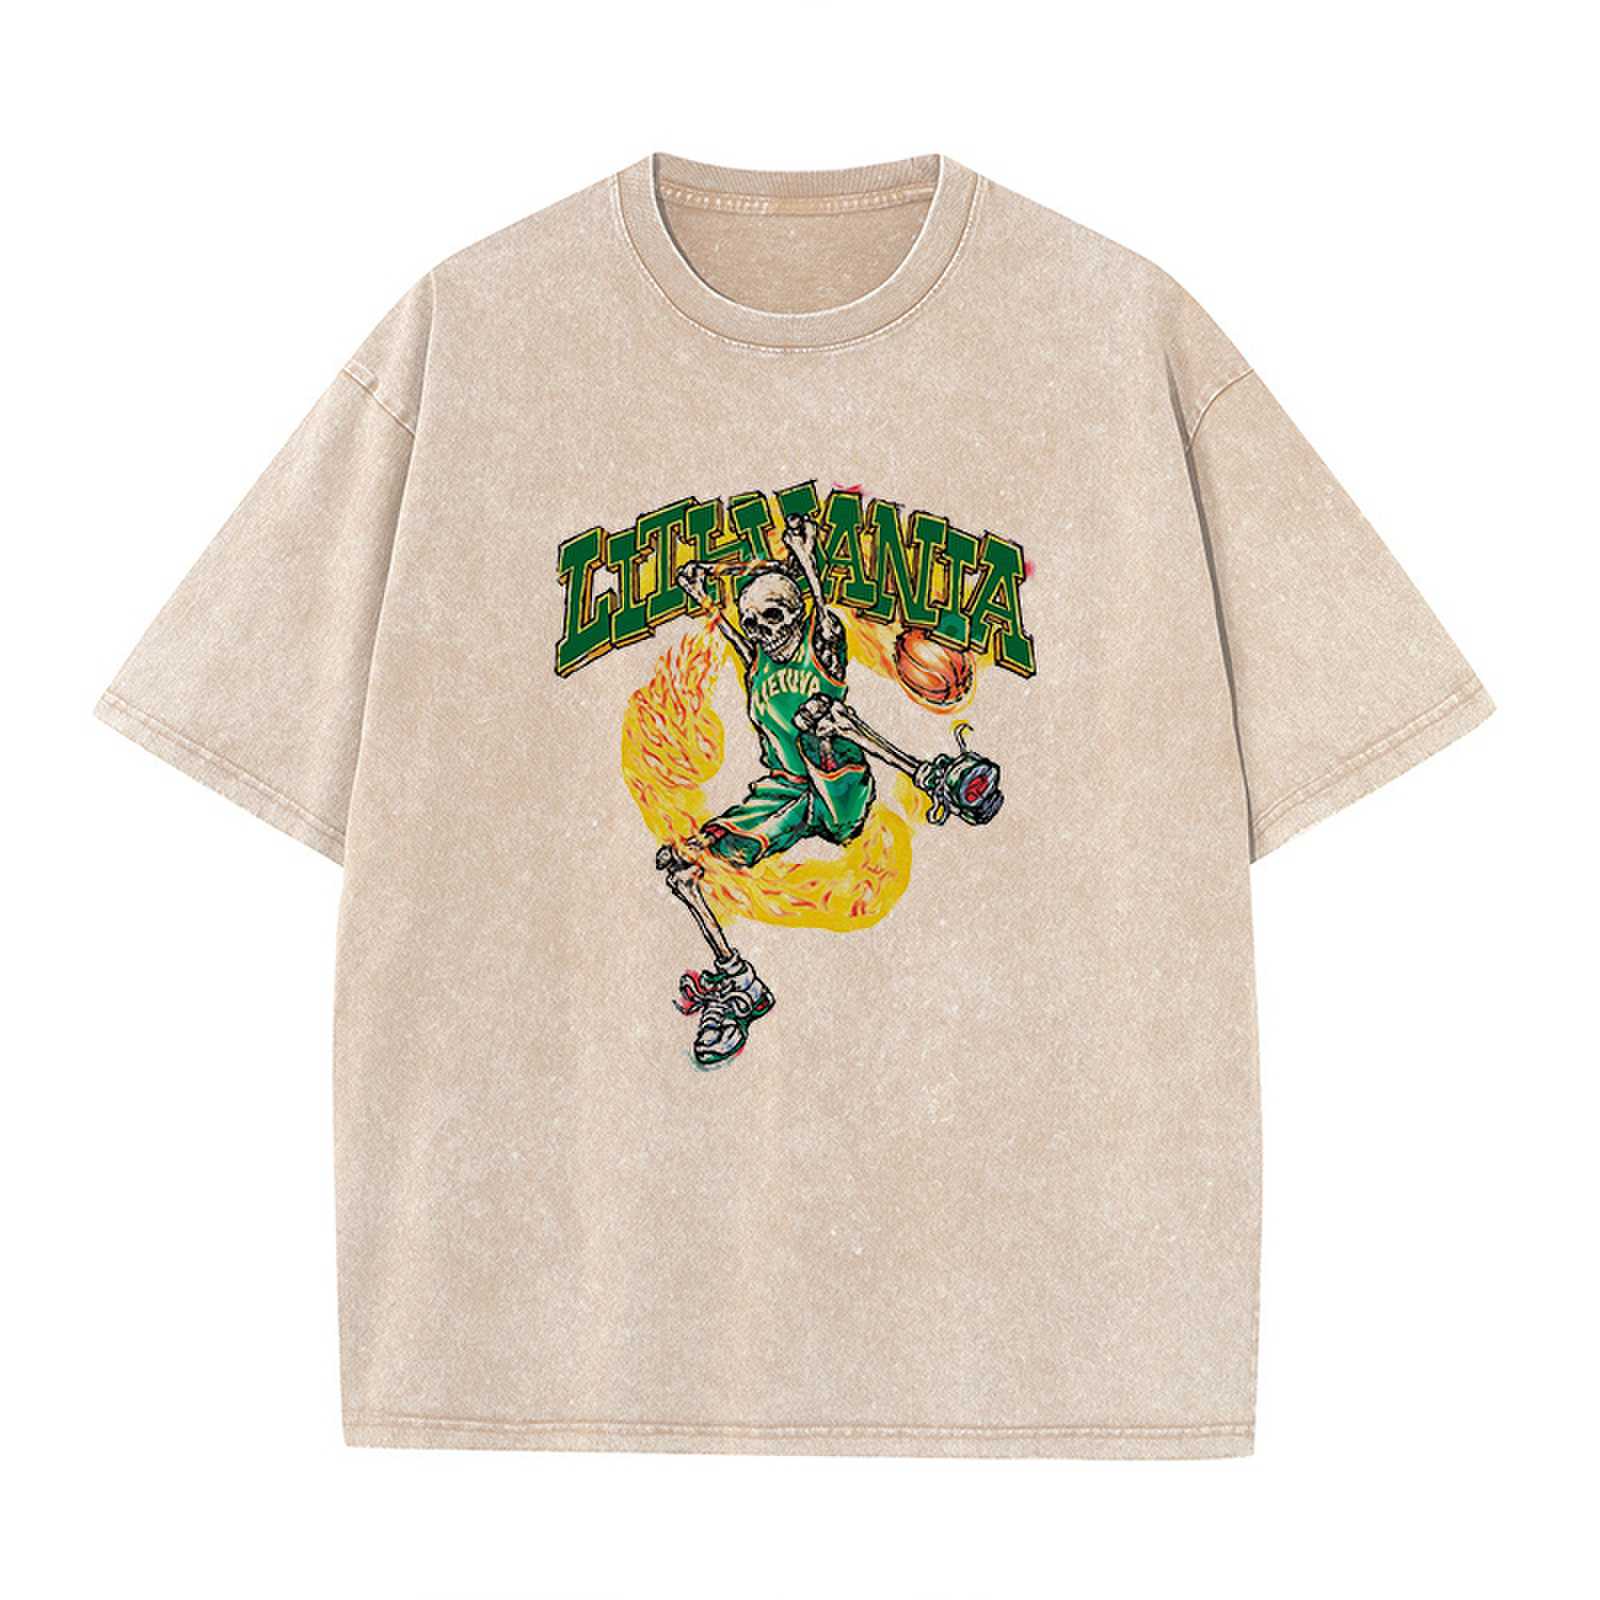 Lithuania Basketball Graffiti Washed Cotton T-Shirt